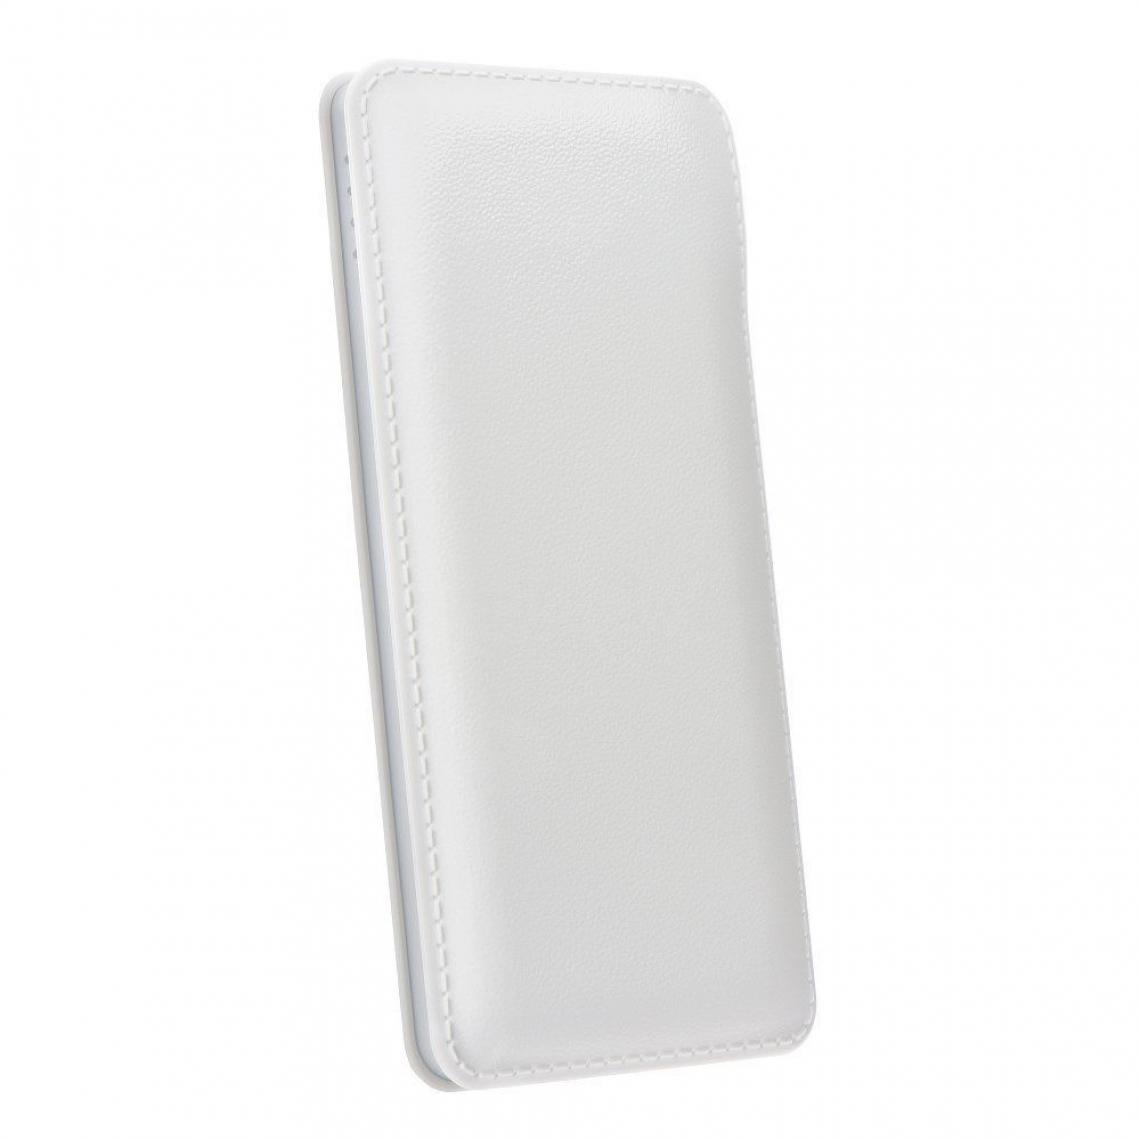 Ozzzo - Chargeur batterie externe 10000mAh powerbank ozzzo blanc pour Samsung Galaxy Note 10 Lite - Autres accessoires smartphone